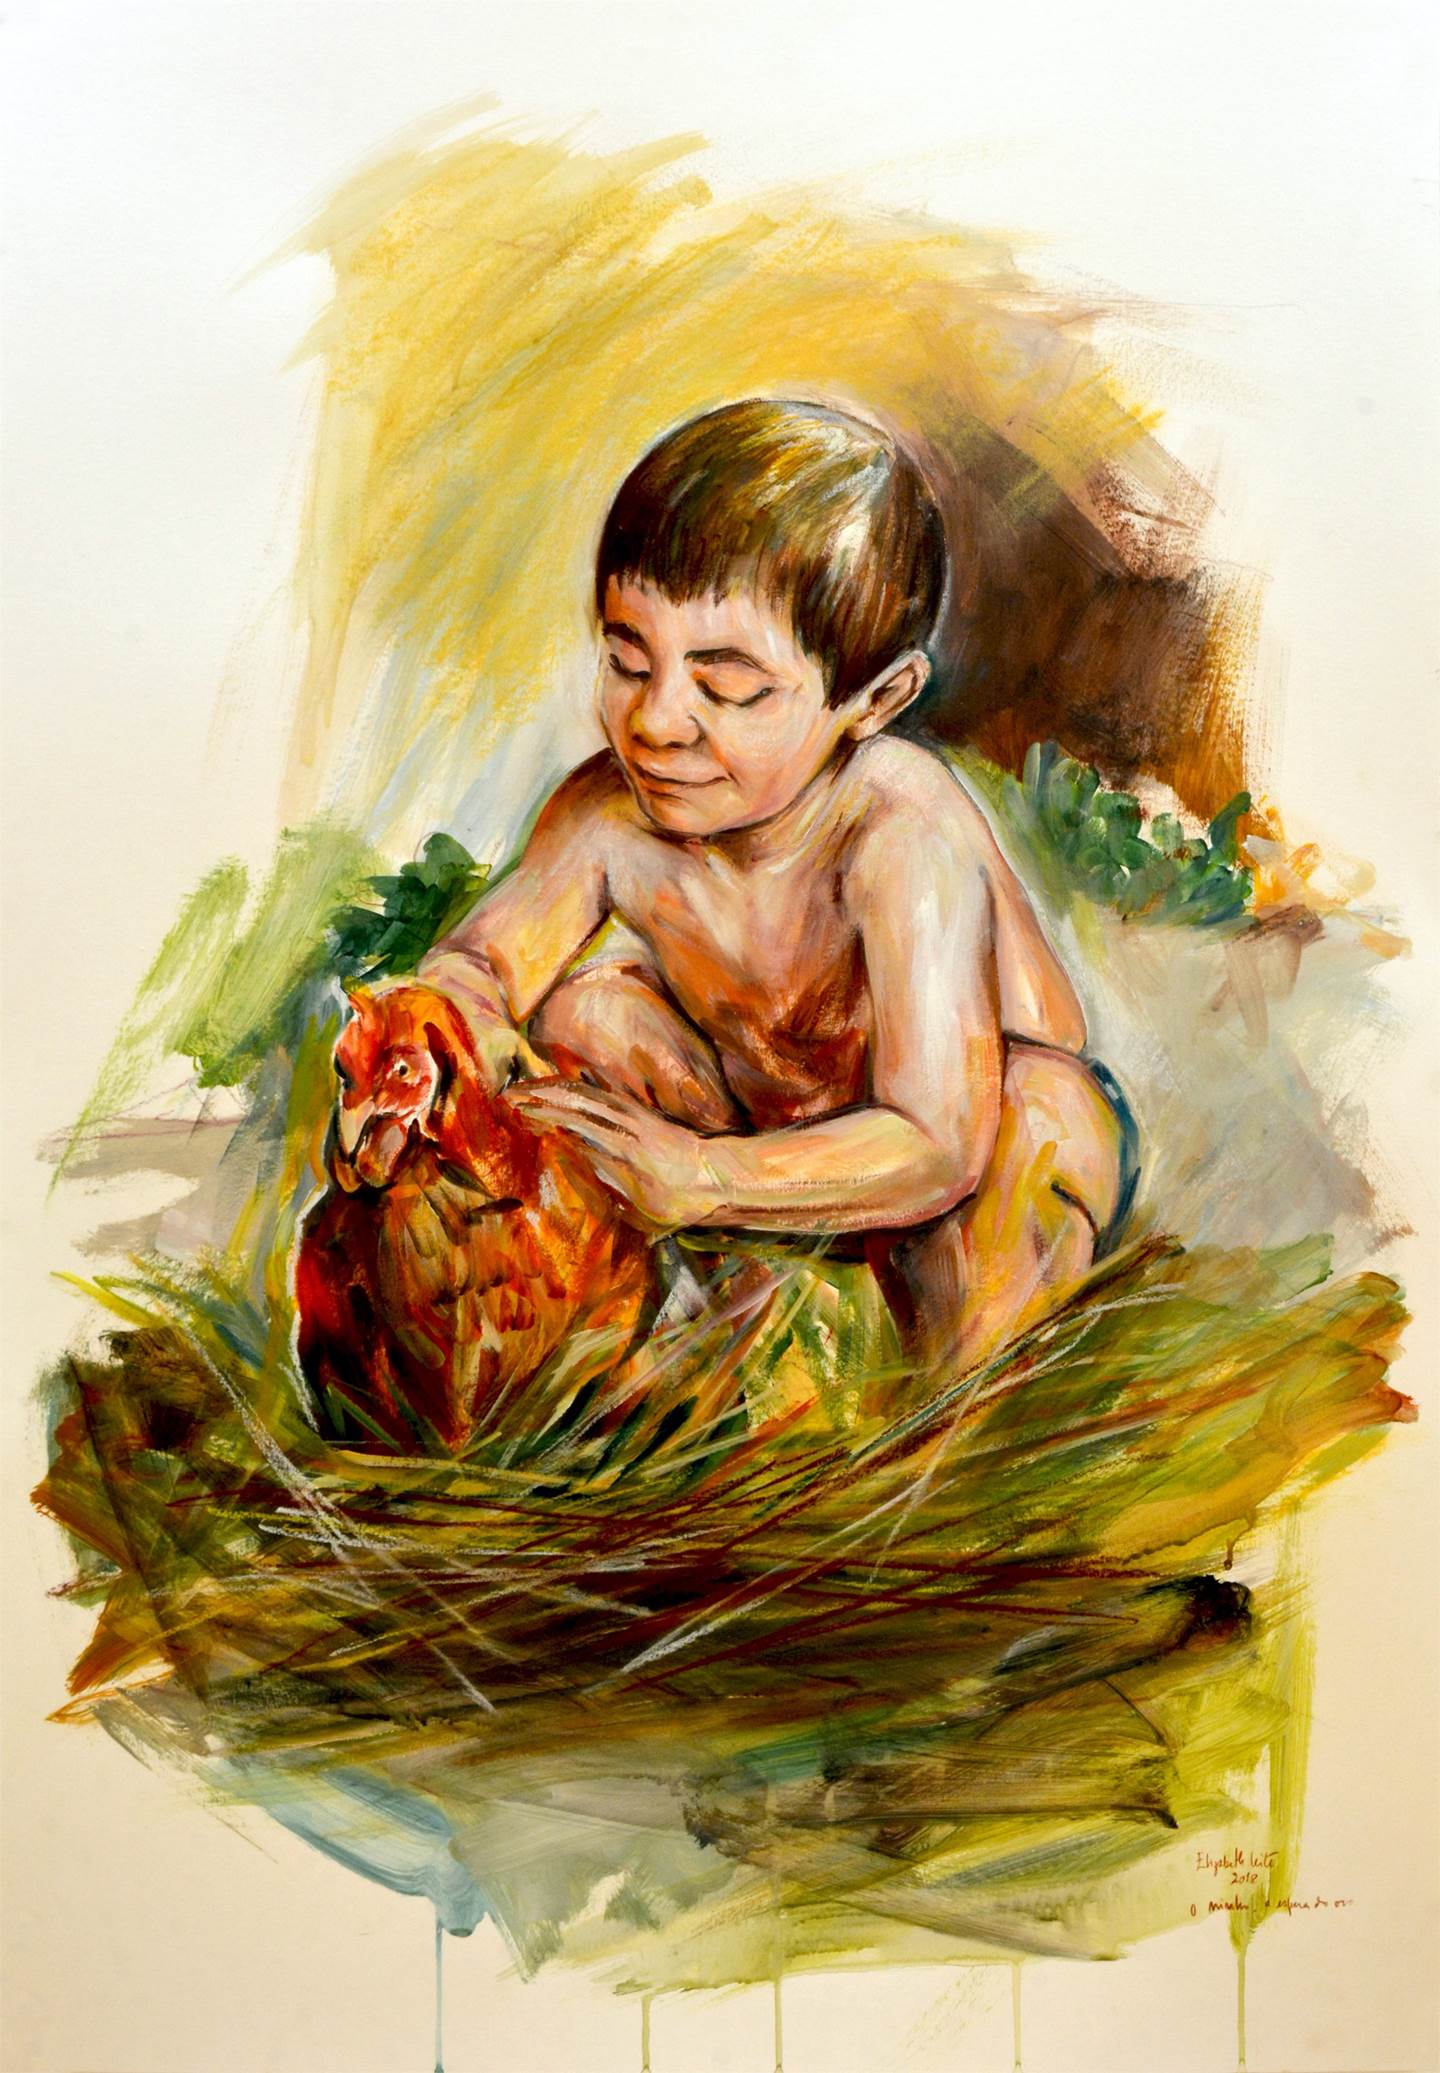 No ninho à espera do ovo, original Figura humana Acrílico Pintura de Elizabeth  Leite